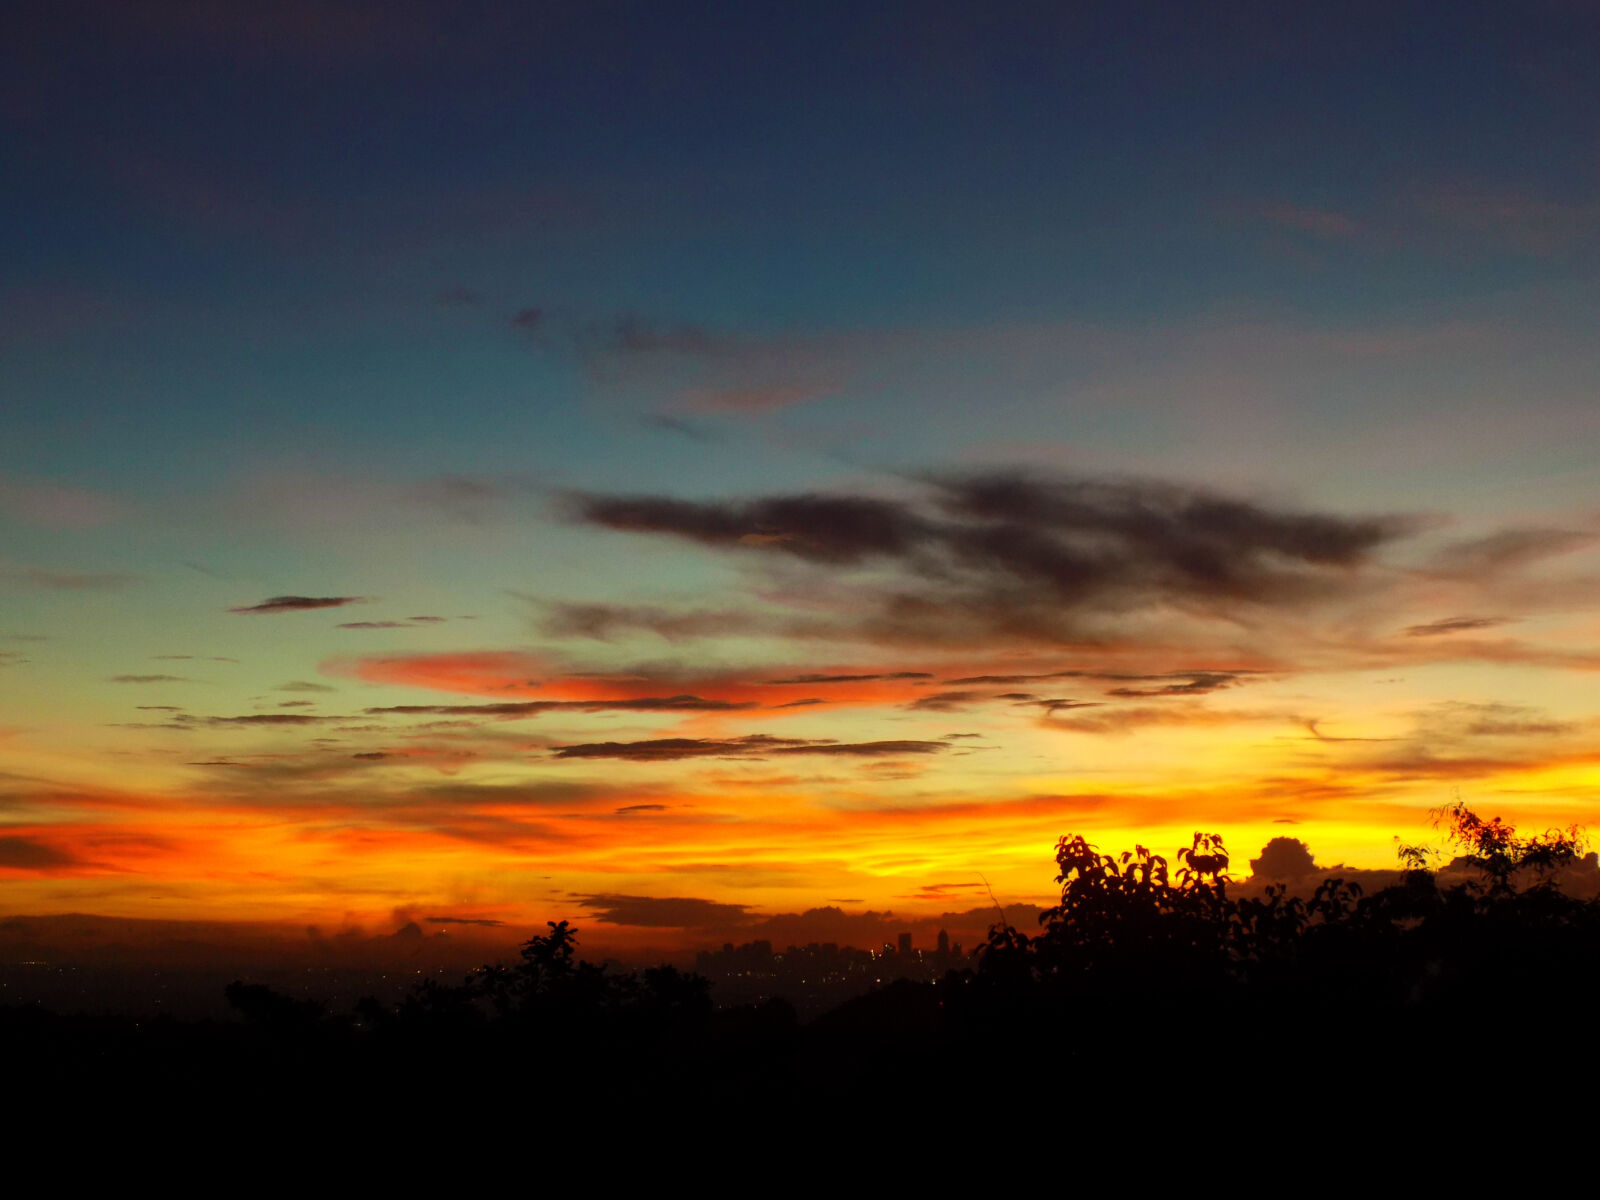 Nikon COOLPIX L340 sample photo. Sky, sunset, evening, sky photography